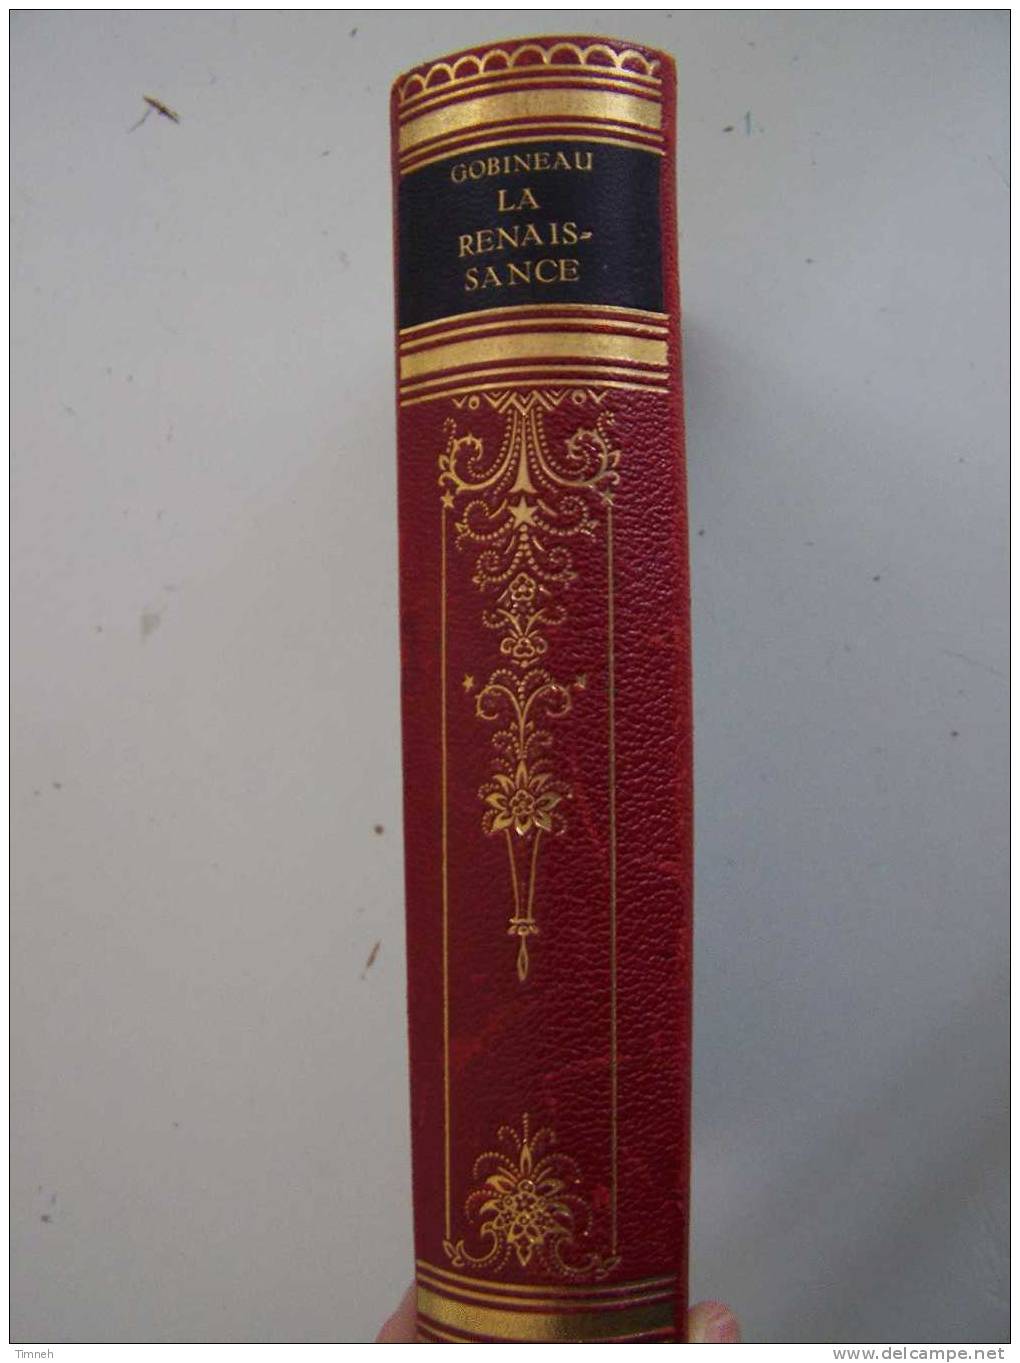 LA RENAISSANCE Comte  GOBINEAU 1922 Bibliothèque Française VOL.XXXIII Scènes Historiques TOME PREMIER Savonarole Borgia - Französische Autoren